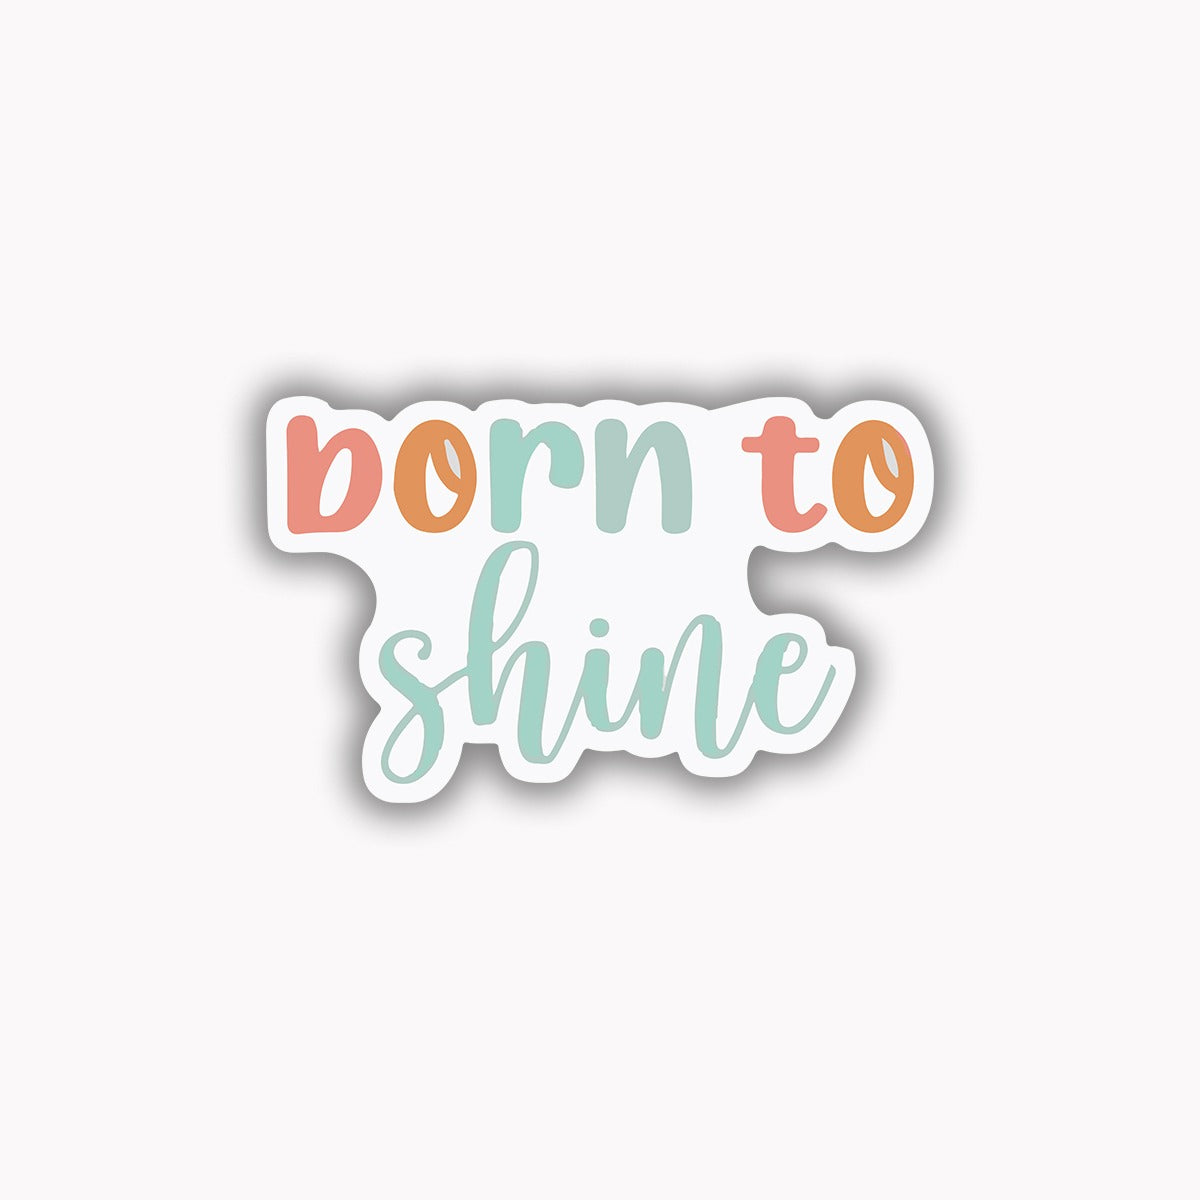 Born to shine